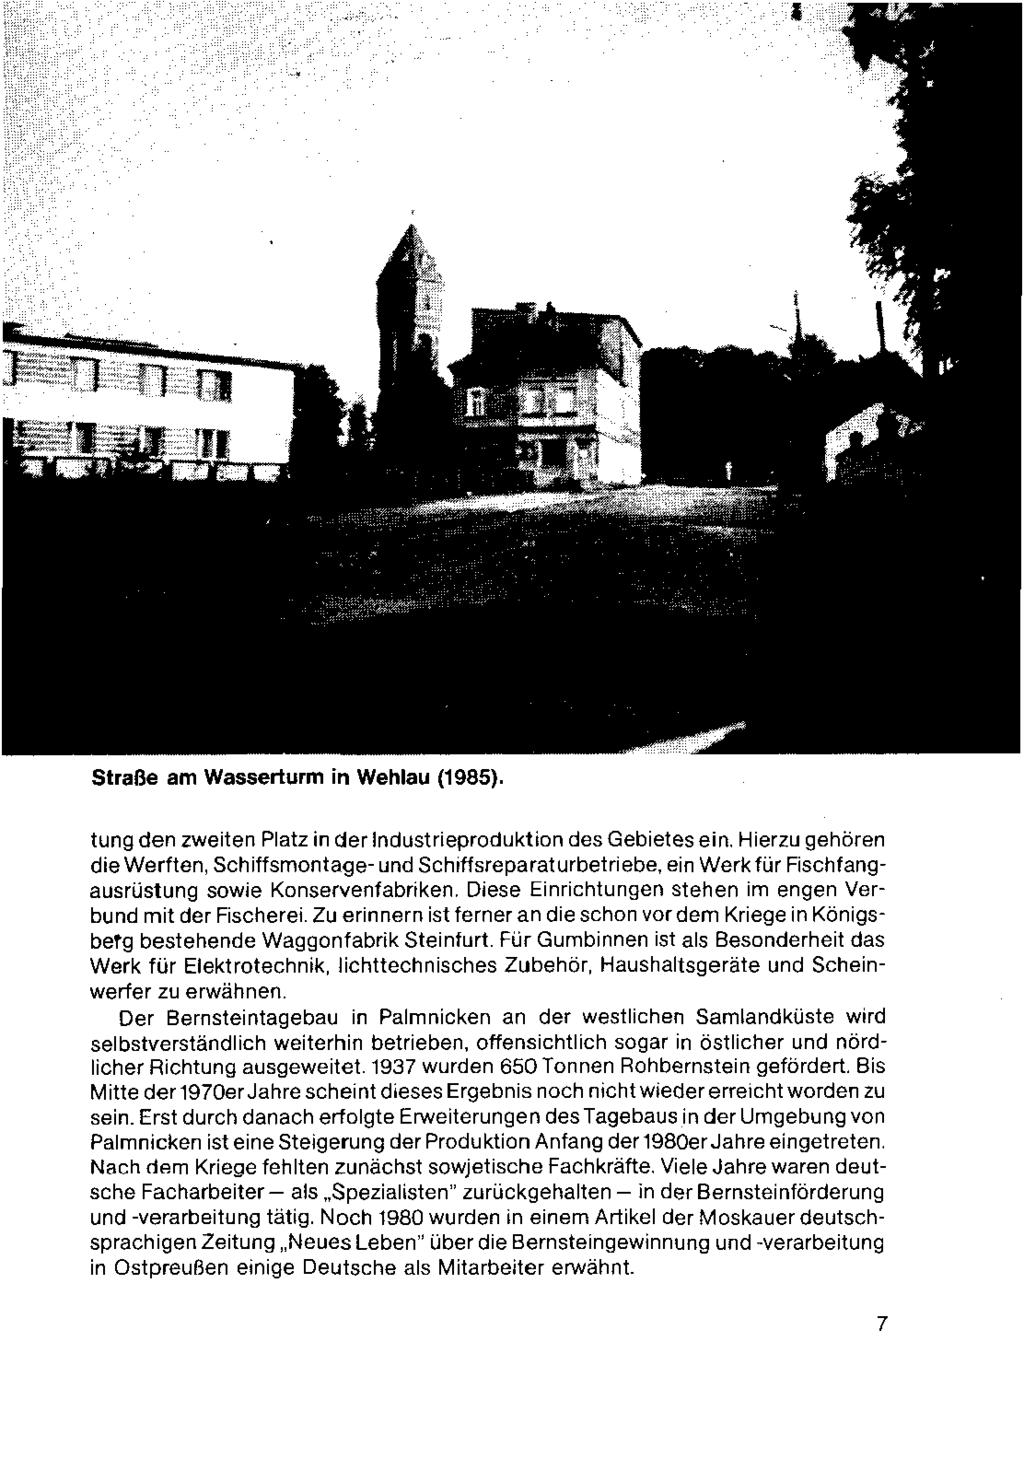 Straße am Wasserturm in Wehlau (1985). tunaden zweiten Platz in der Industrieoroduktion desgebietesein. Hierzu aehören dieherften, Schiffsmontage-und sch!ffsreparaturbetriebe.